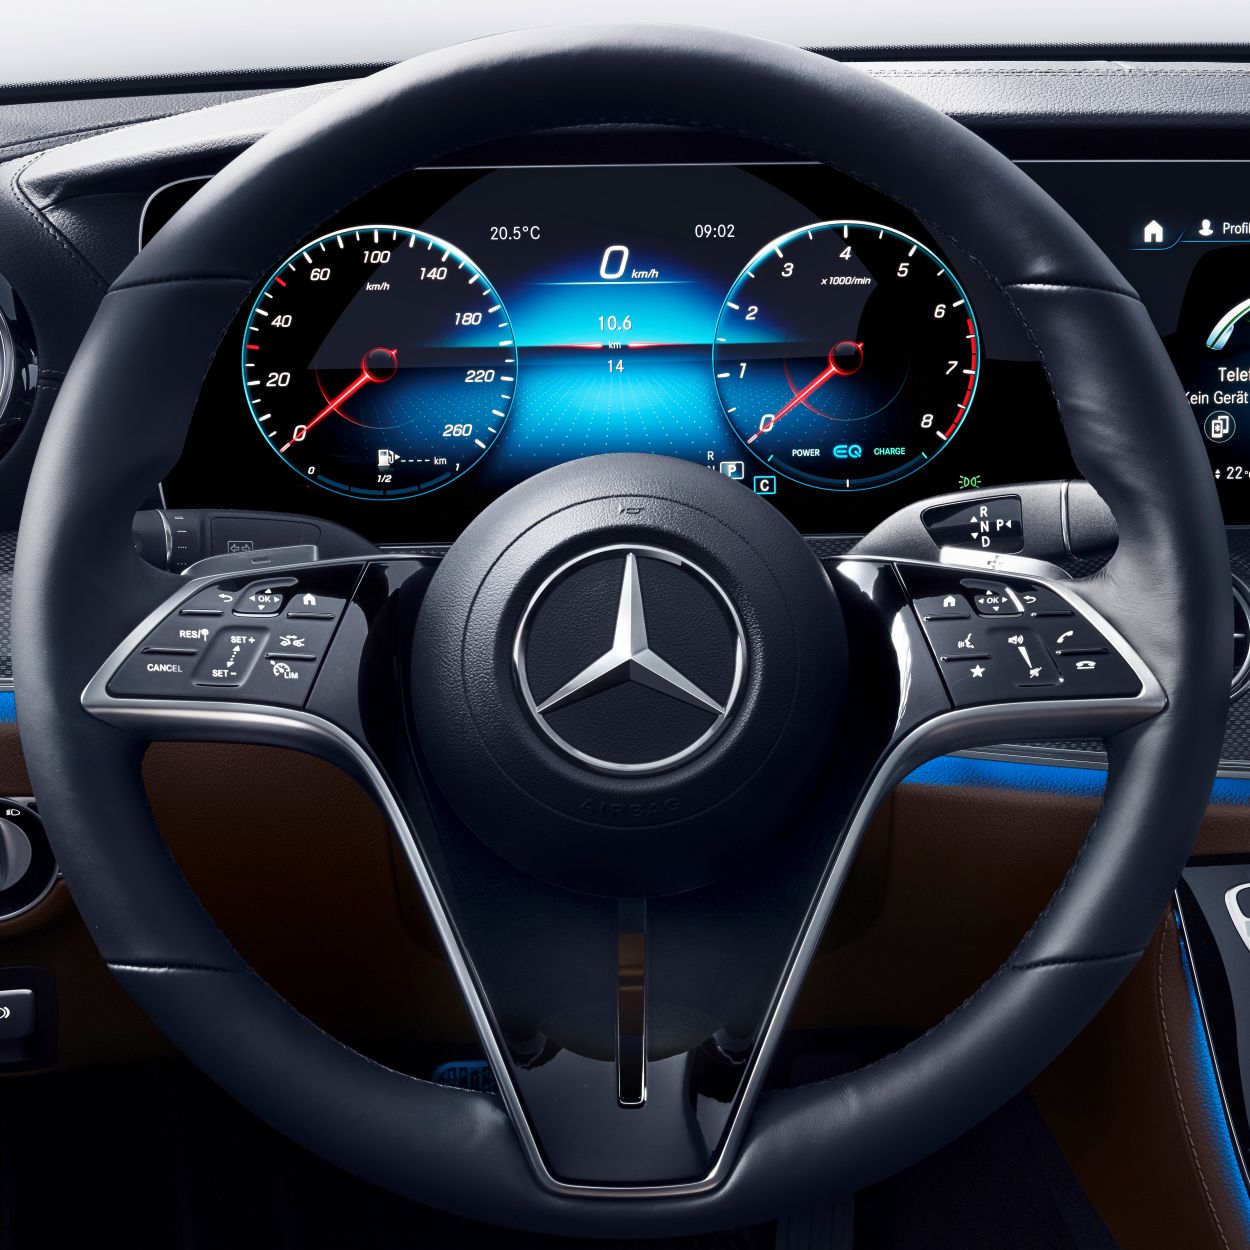 Daimler bringt vernetztes Lenkrad in Serie